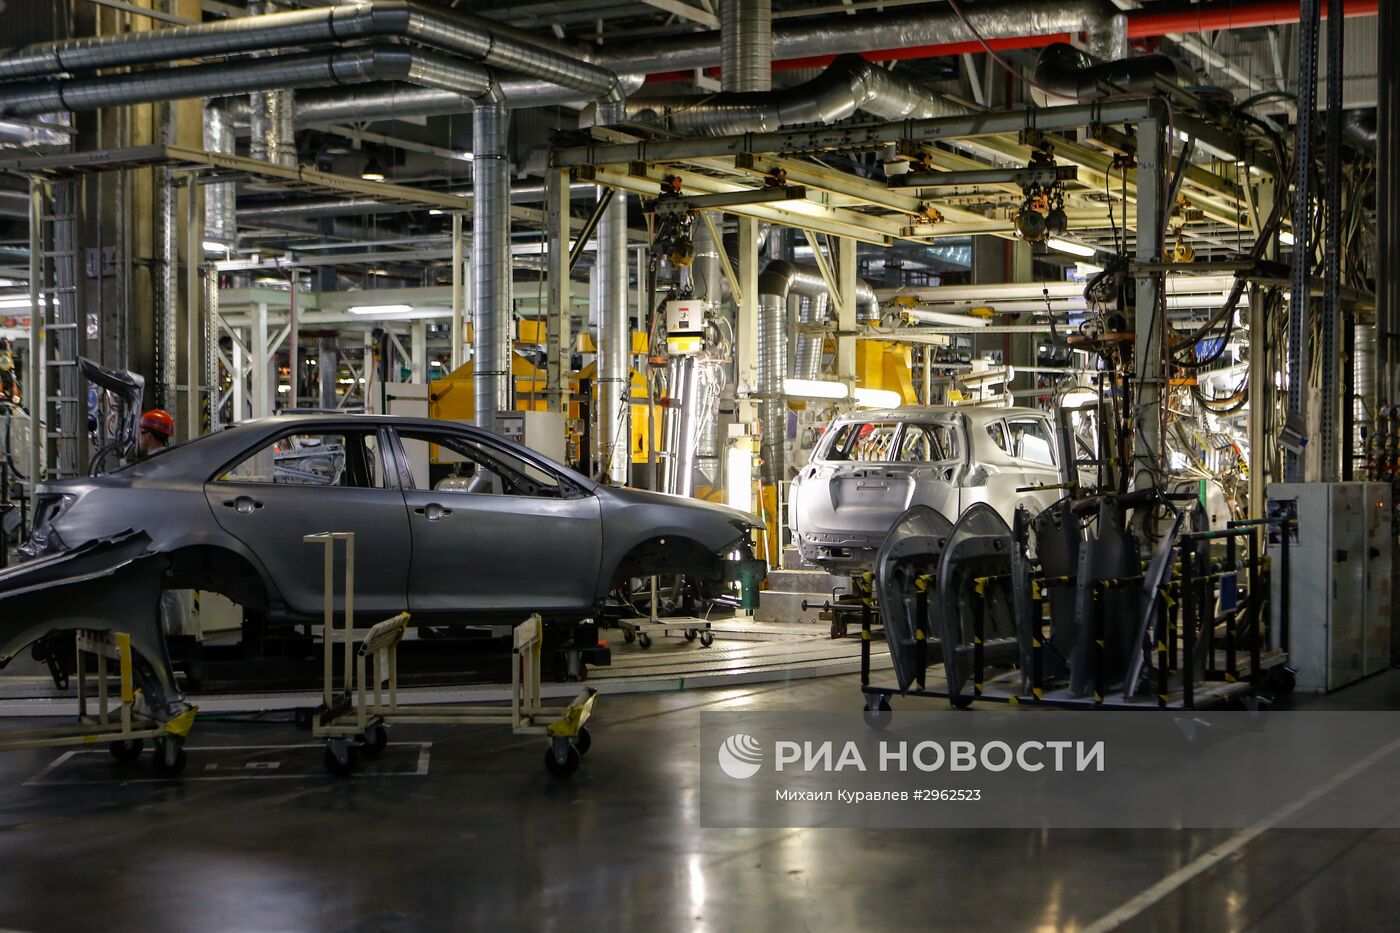 Запуск производства новой модели Toyota RAV4 в Санкт-Петербурге